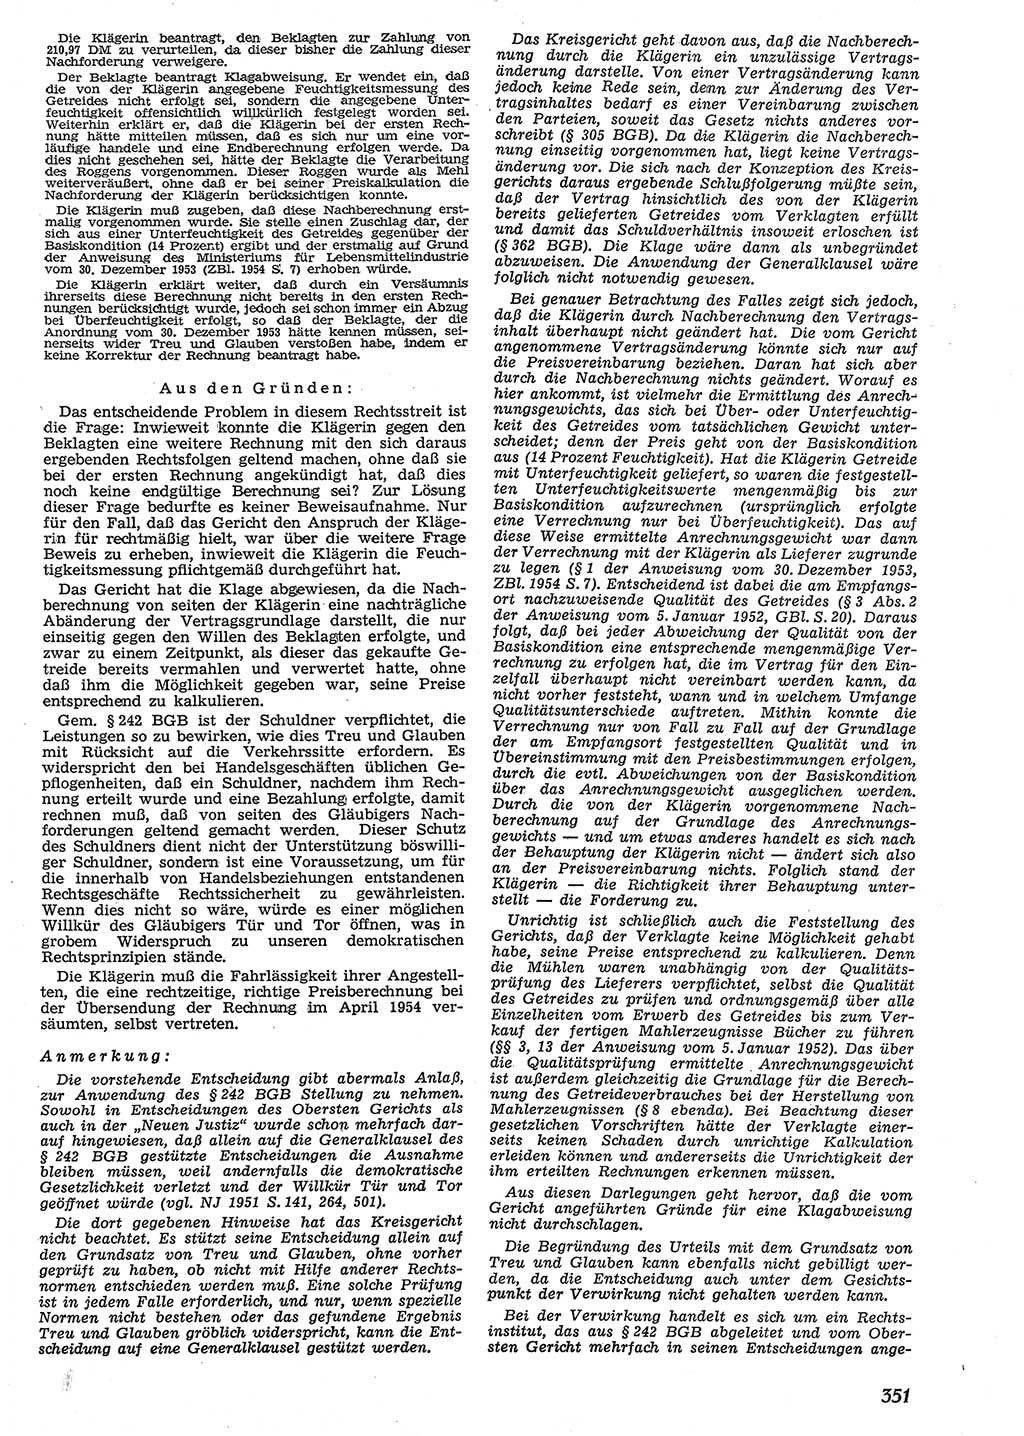 Neue Justiz (NJ), Zeitschrift für Recht und Rechtswissenschaft [Deutsche Demokratische Republik (DDR)], 10. Jahrgang 1956, Seite 351 (NJ DDR 1956, S. 351)